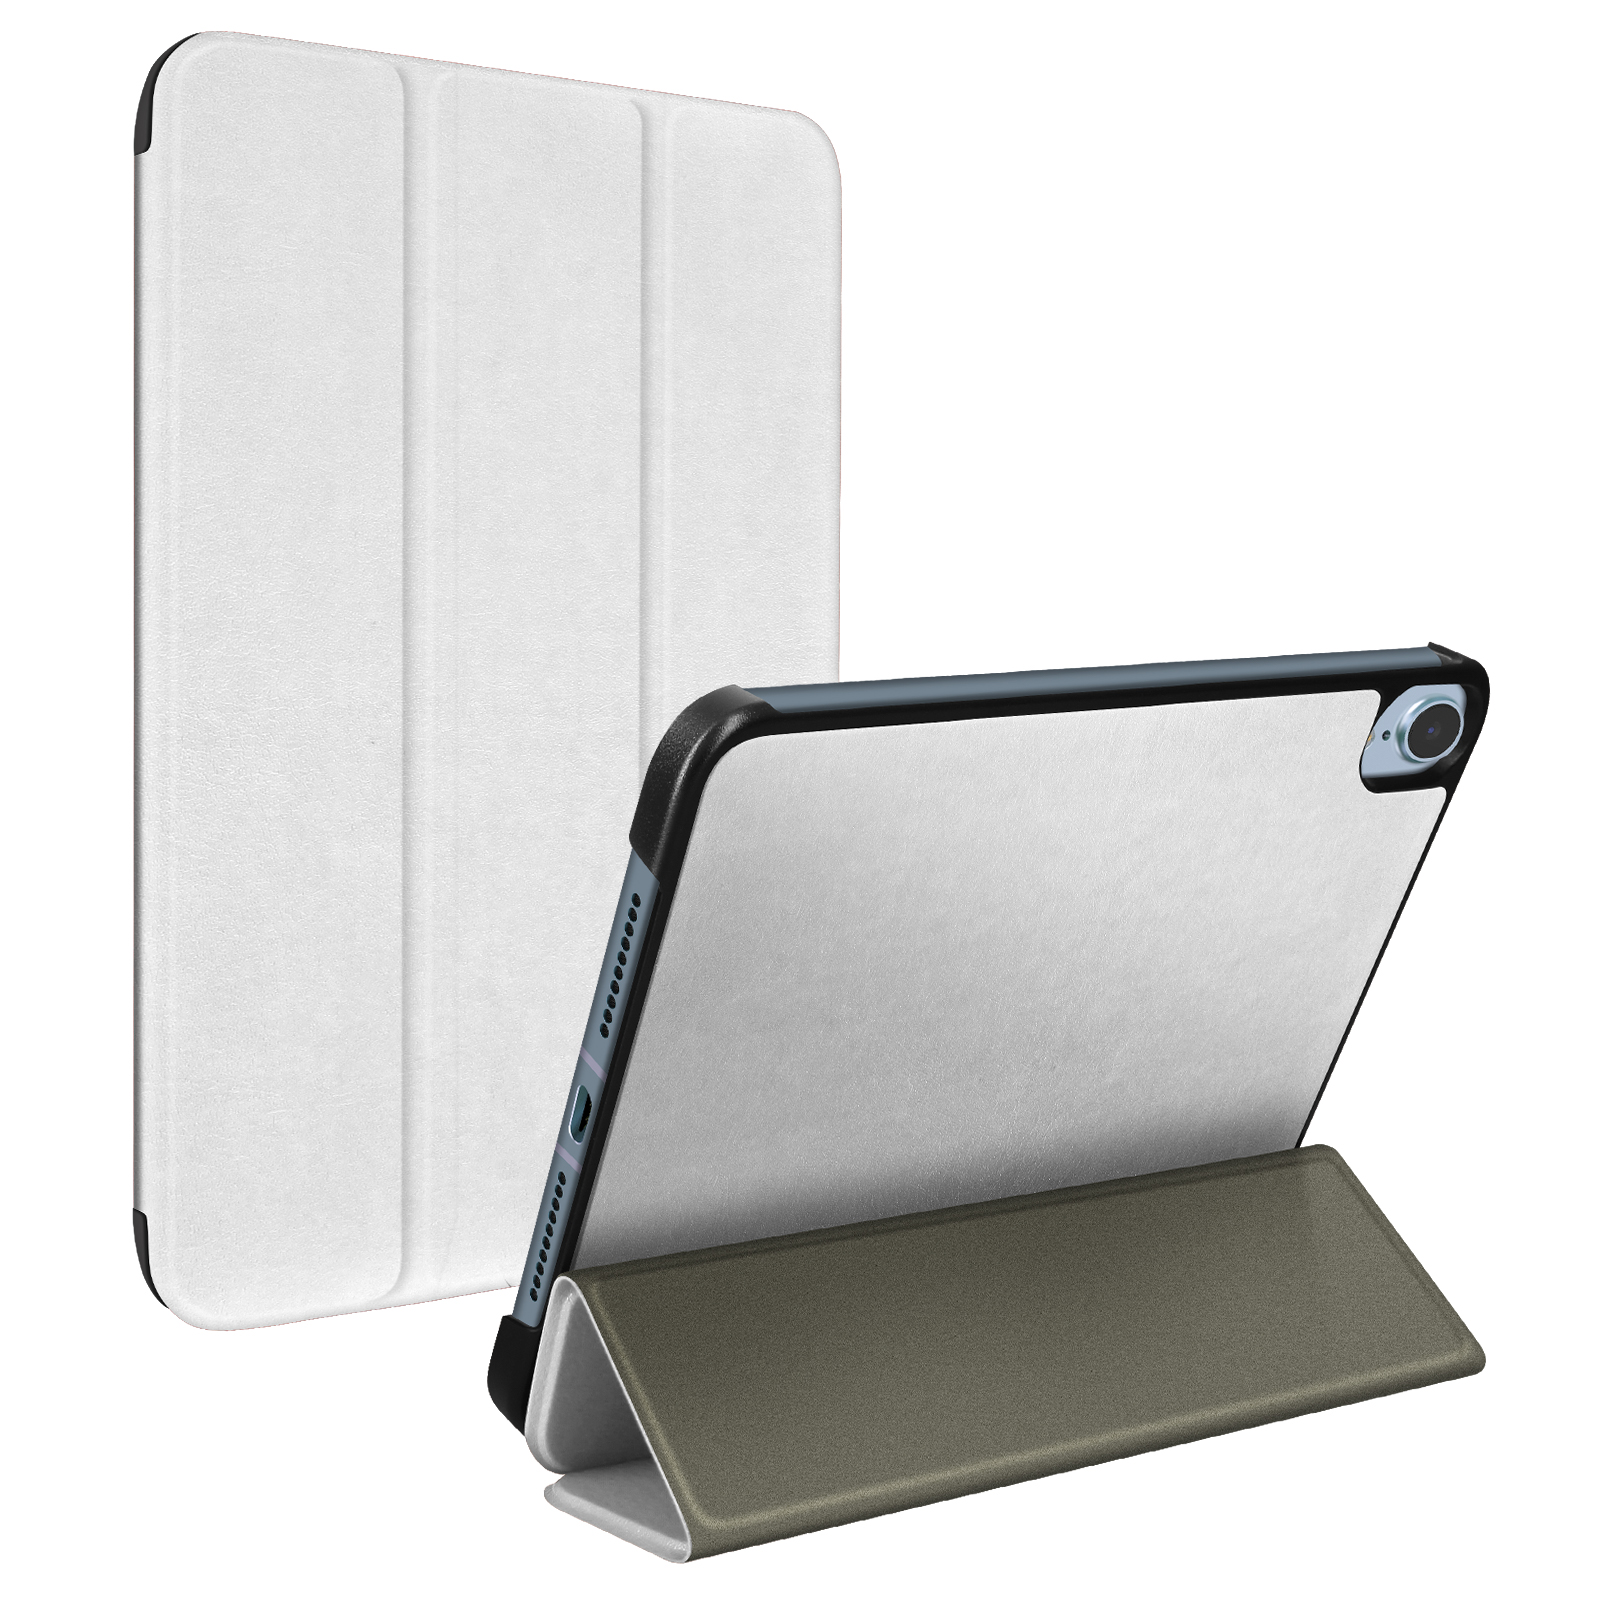 Coque pour iPad Mini 6 8.3 2021 Qualité Militaire Robuste Antichoc  Porte-Stylo Silicone - Support - Housse de Poignée pour iPad Mini 6 en  destockage et reconditionné chez DealBurn